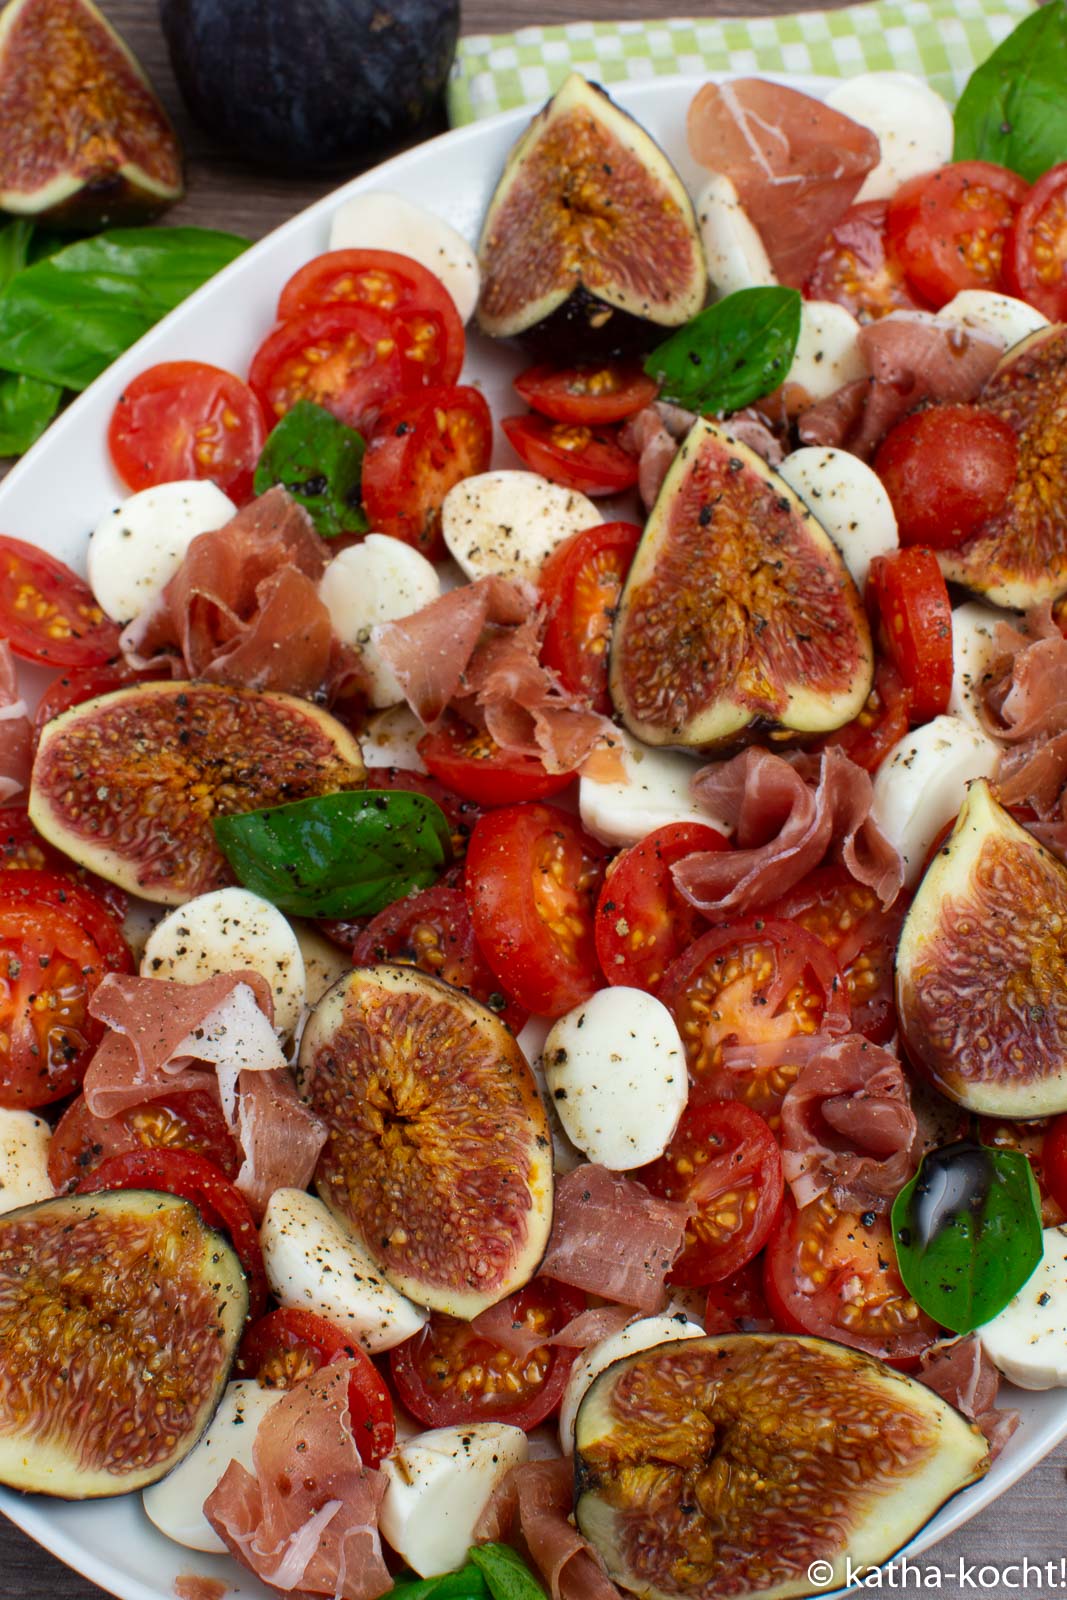 Tomate-Mozzarella Salat mit Feigen und Serrano Schinken - Katha-kocht!